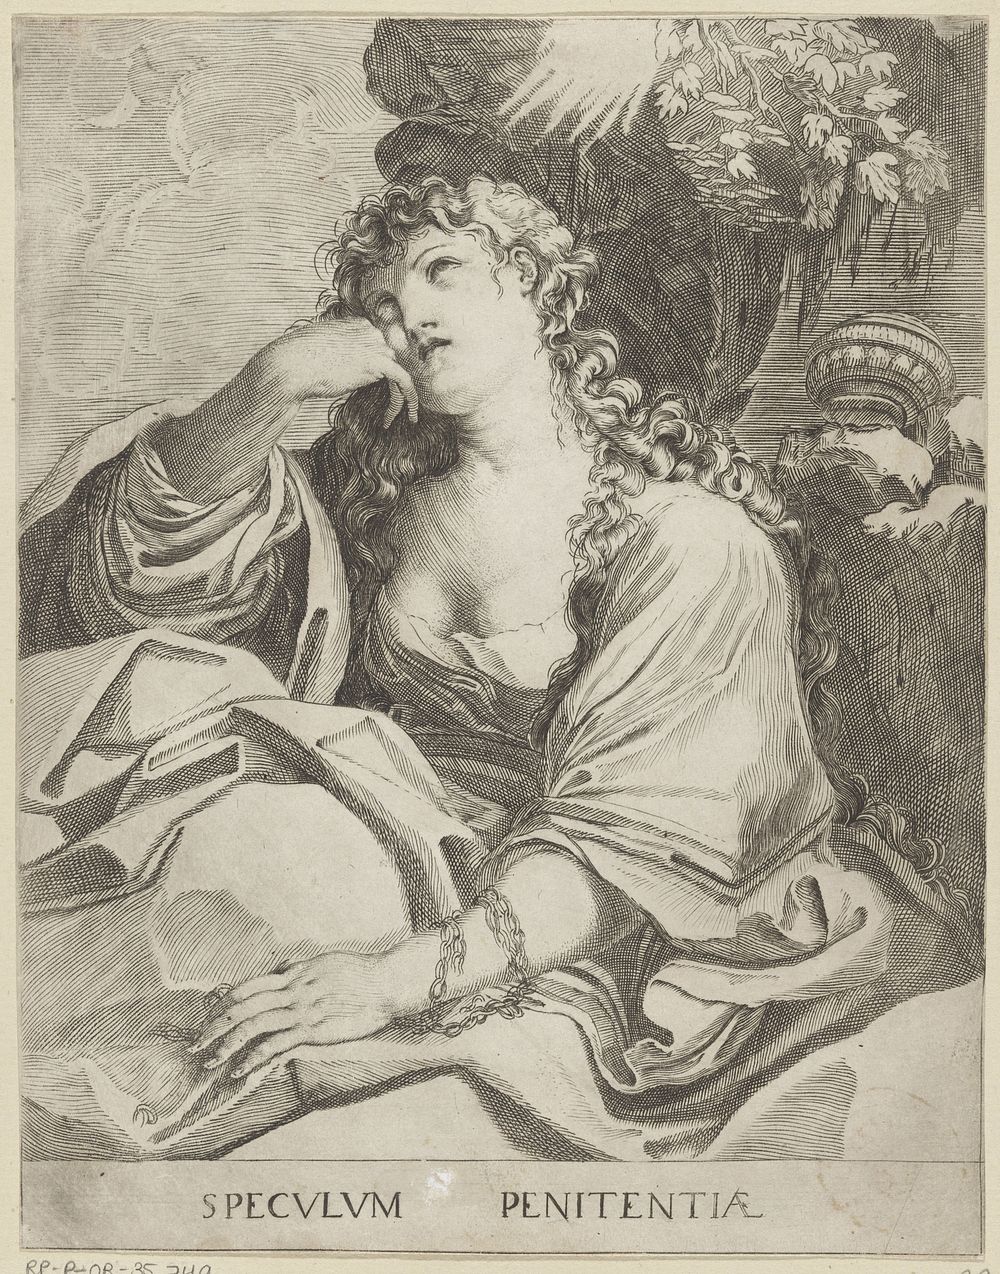 Maria Magdalena (1584 - 1623) by Francesco Brizio, Agostino Carracci, Ludovico Carracci and Titiaan